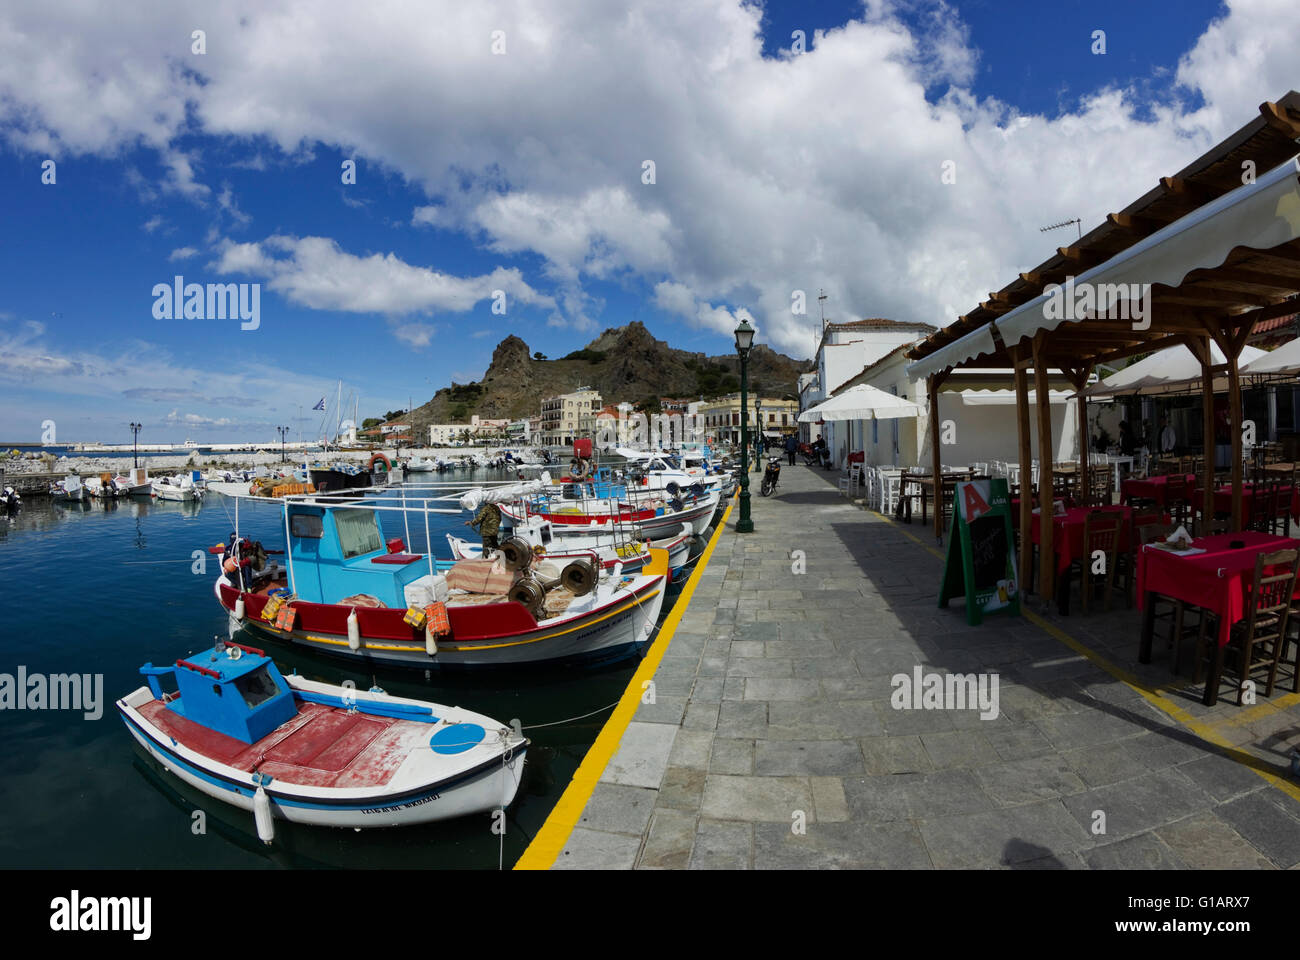 Rangée de tables de restaurant / taverne surplombant le front de mer pittoresque de Myrina / Haven. Lemnos ou Limnos, Grèce Banque D'Images